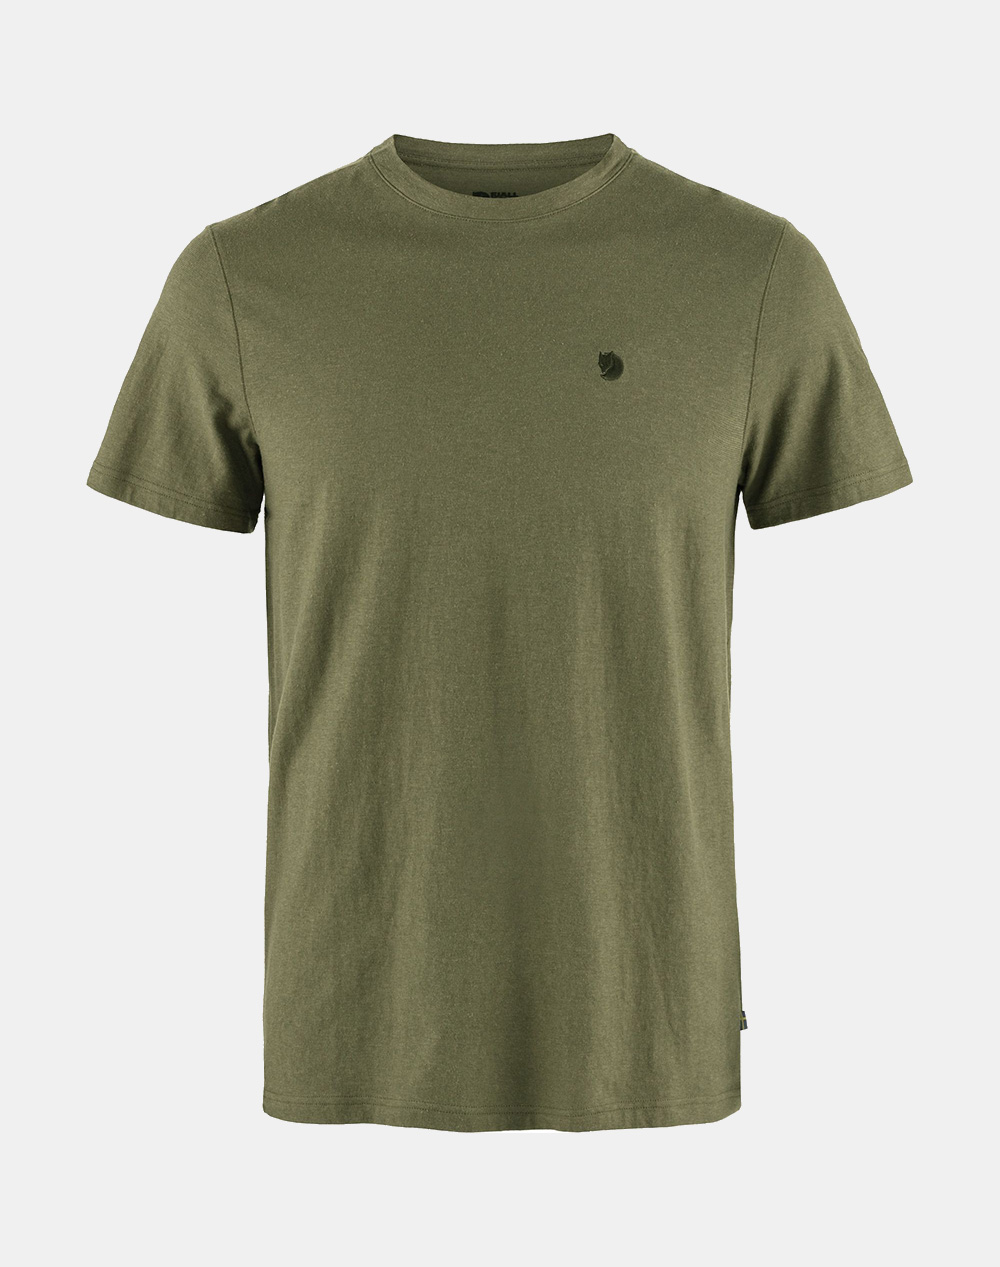 FJALL RAVEN Hemp Blend T-shirt M / Hemp Blend T-shirt M F12600215-620 Green 3820PFJAL3400008_XR28326